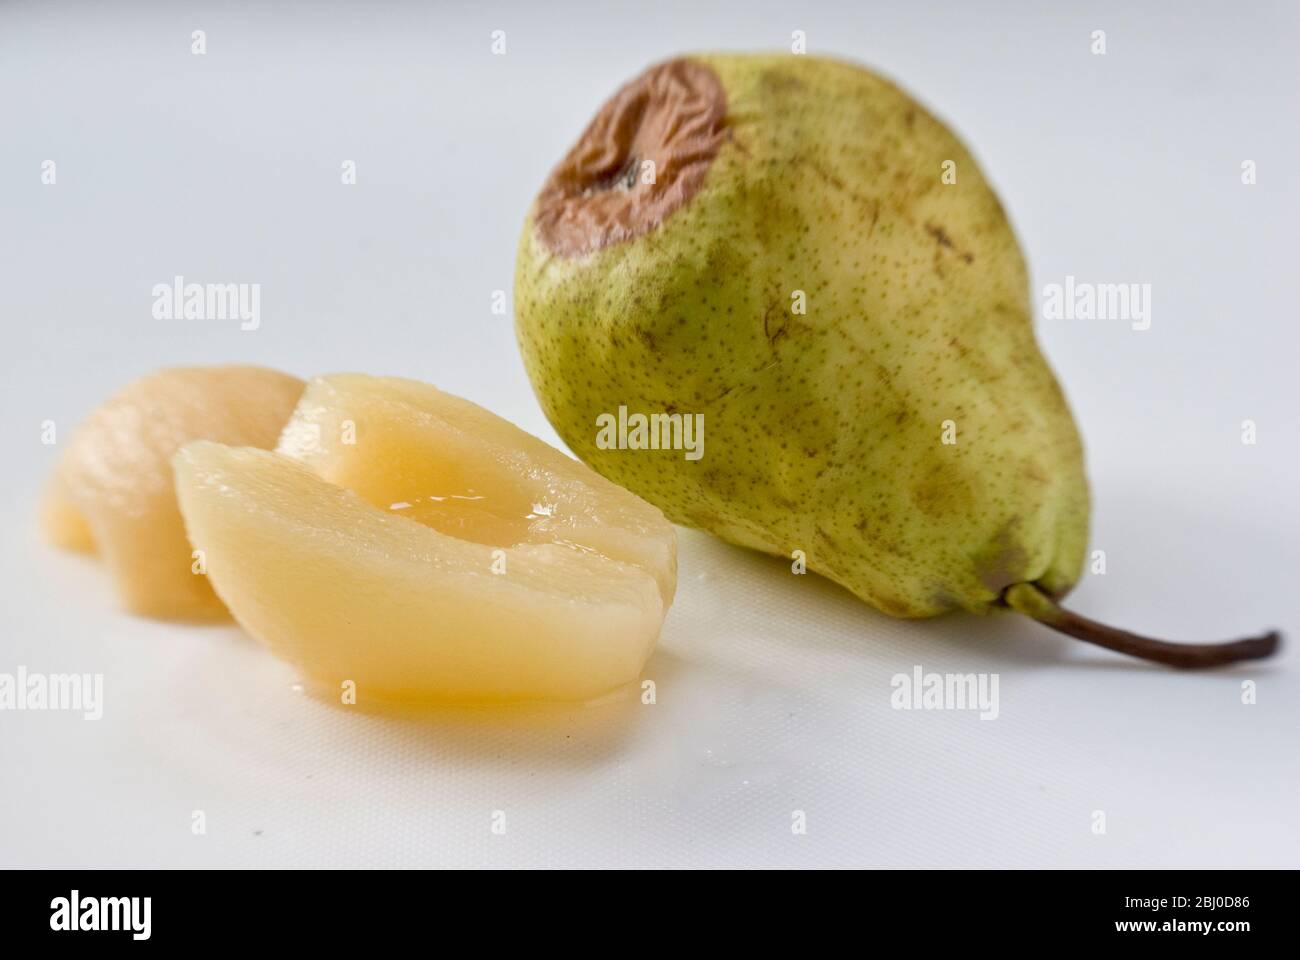 Comparación de la pera fresca cruda, comenzando a pudrirse con peras enlatadas mostrando la ventaja de la fruta enlatada. - Foto de stock